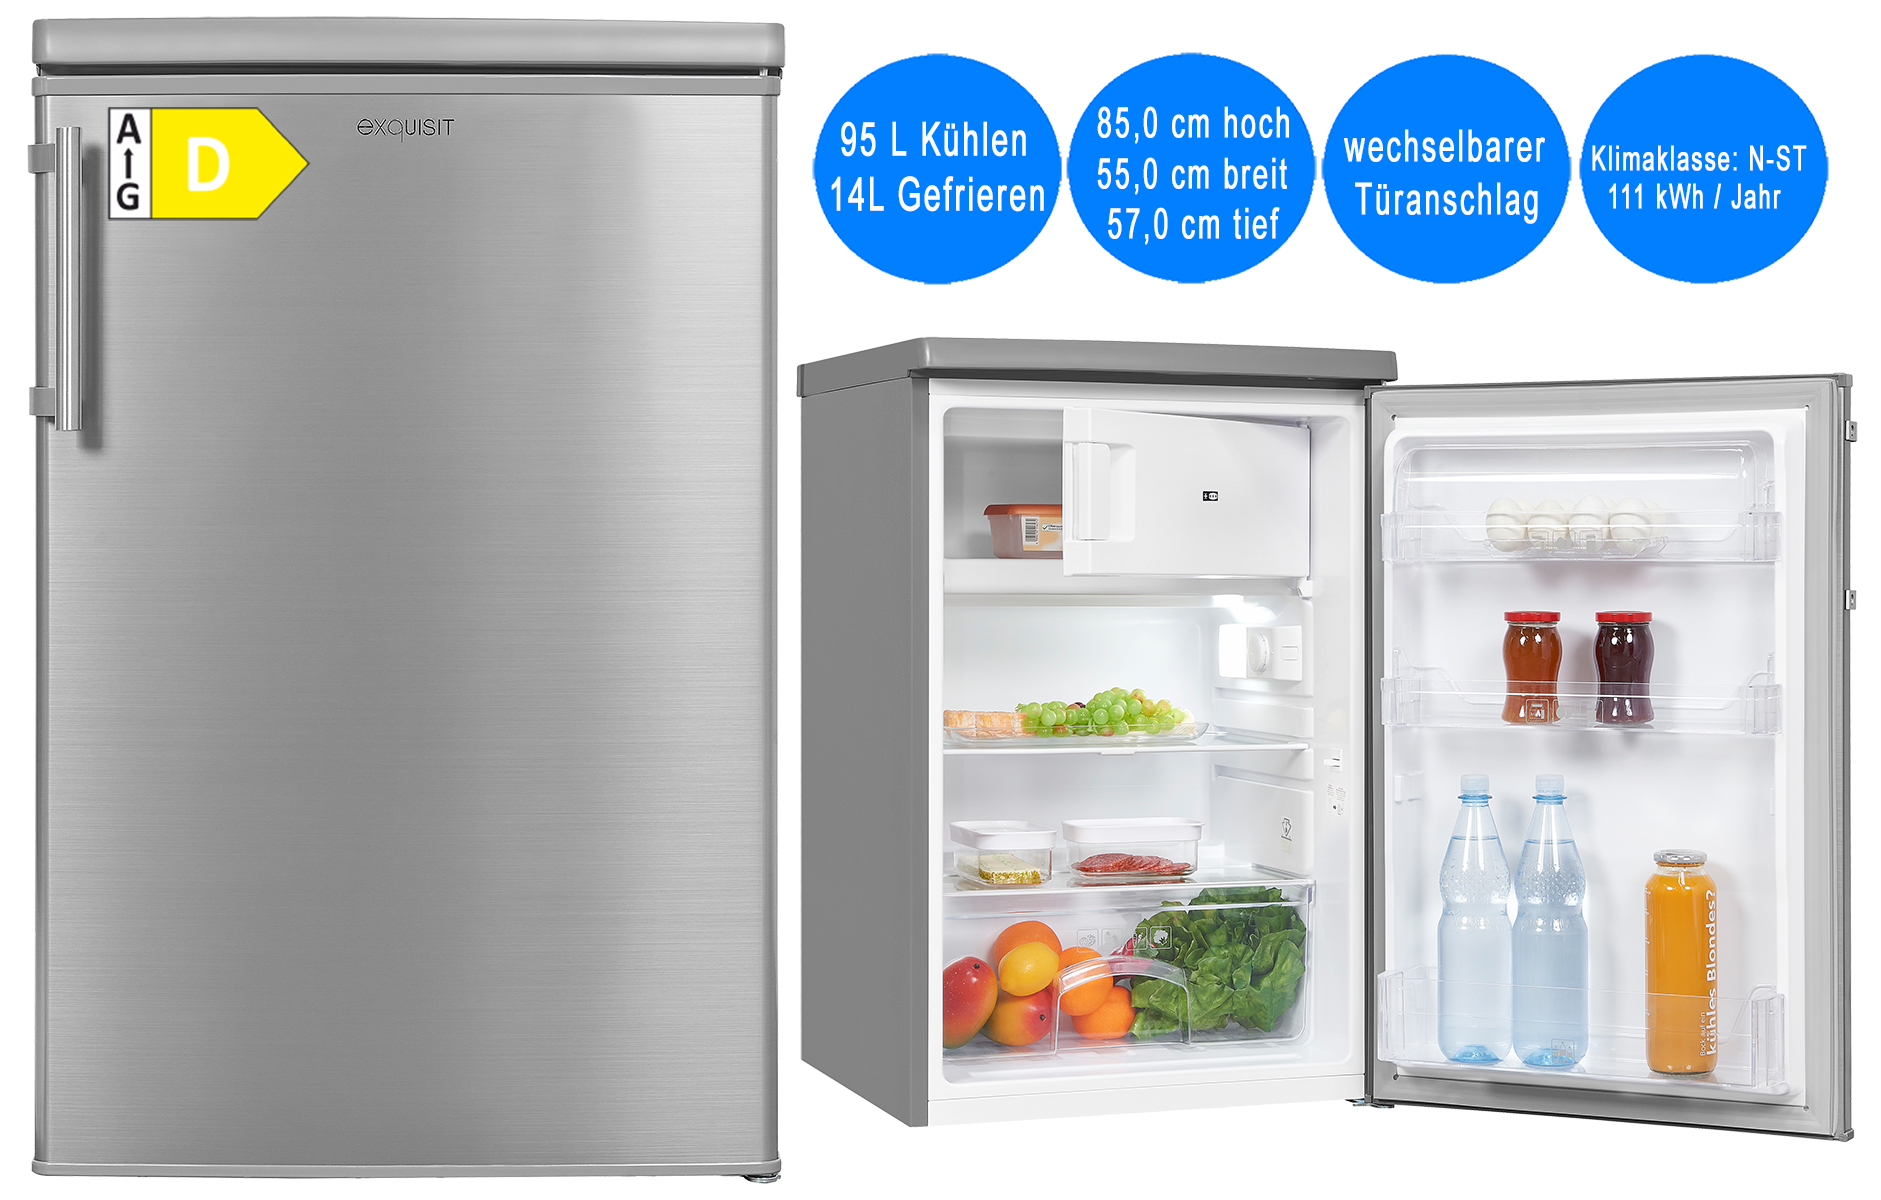 Exquisit Kühlschrank mit Gefrierfach 109L Nutzinhalt Silber freistehend  55cm breit | freistehende Kühlschränke | Kühlschrank | Kühlen & Gefrieren |  Deal for Less